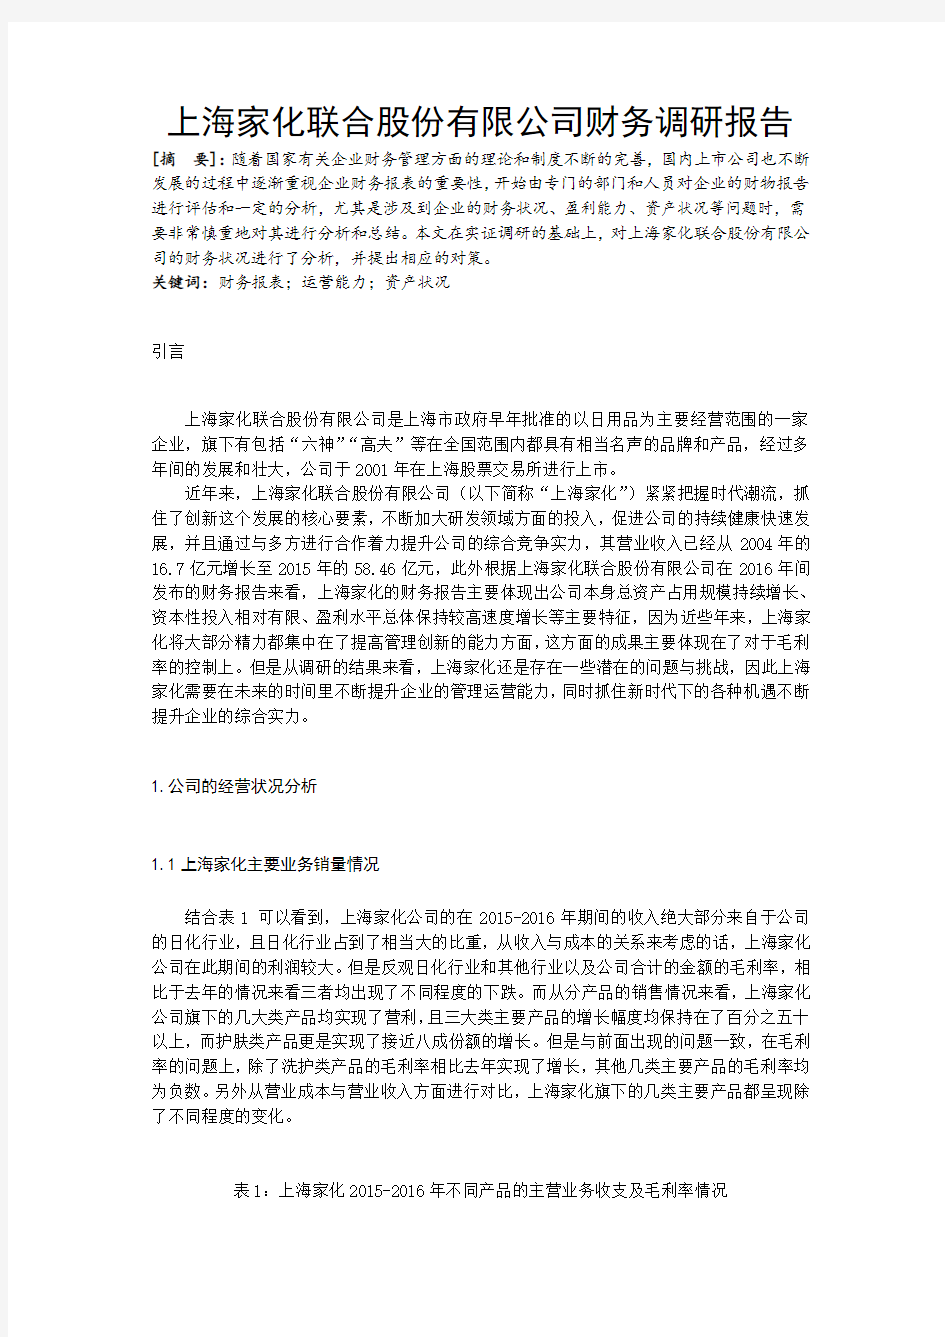 上海家化股份有限公司财务调研报告